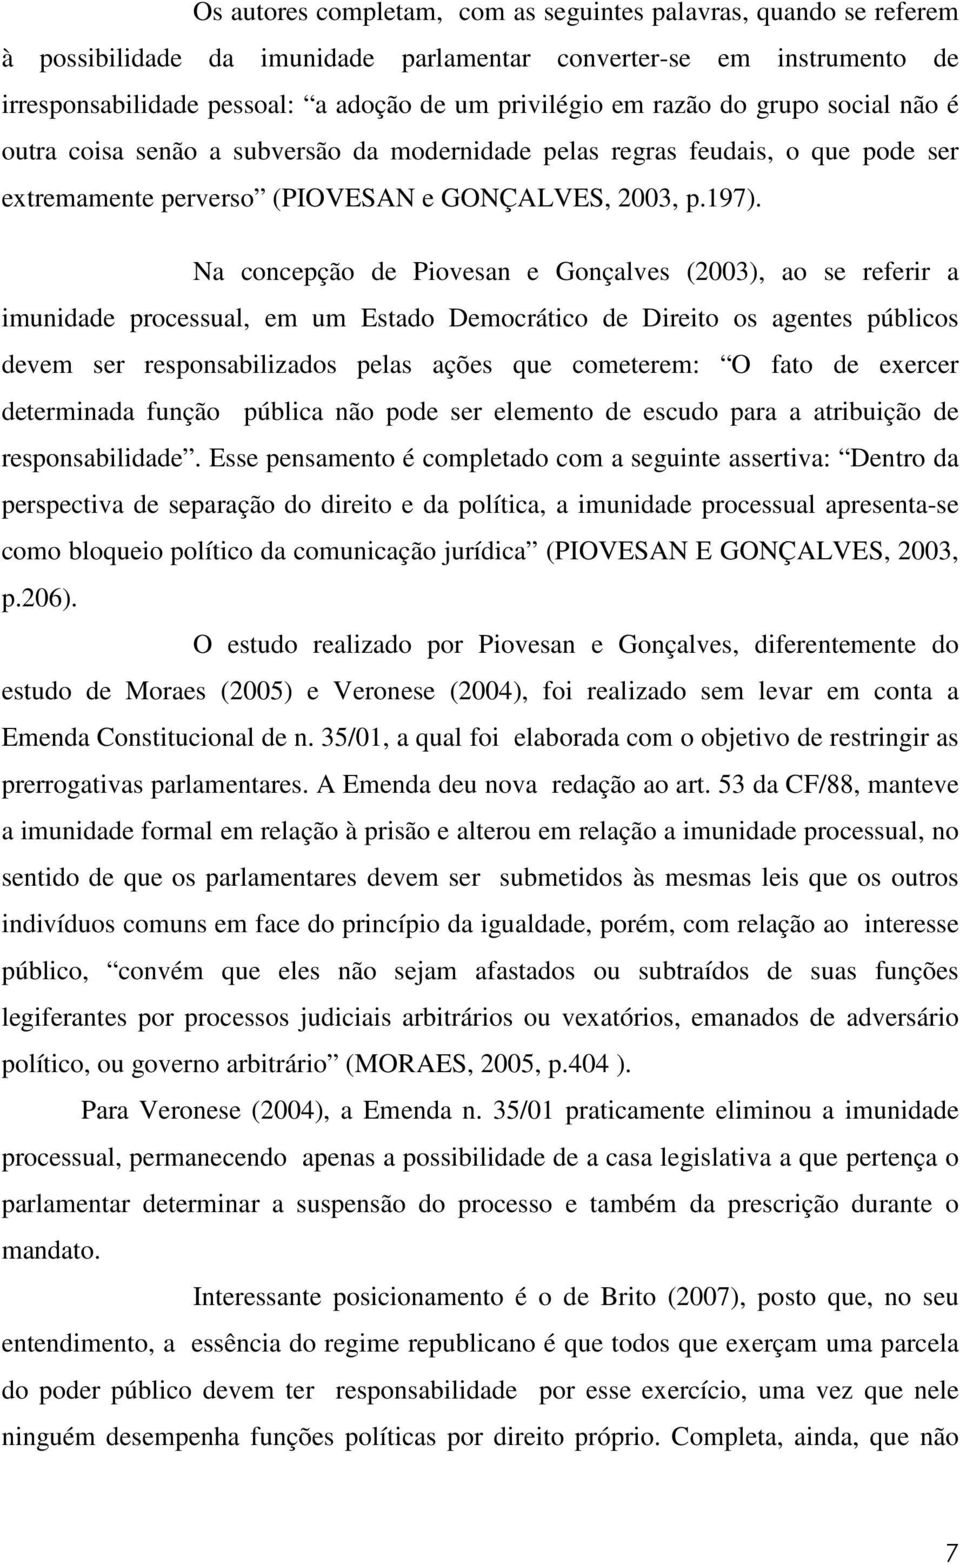 Na concepção de Piovesan e Gonçalves (2003), ao se referir a imunidade processual, em um Estado Democrático de Direito os agentes públicos devem ser responsabilizados pelas ações que cometerem: O